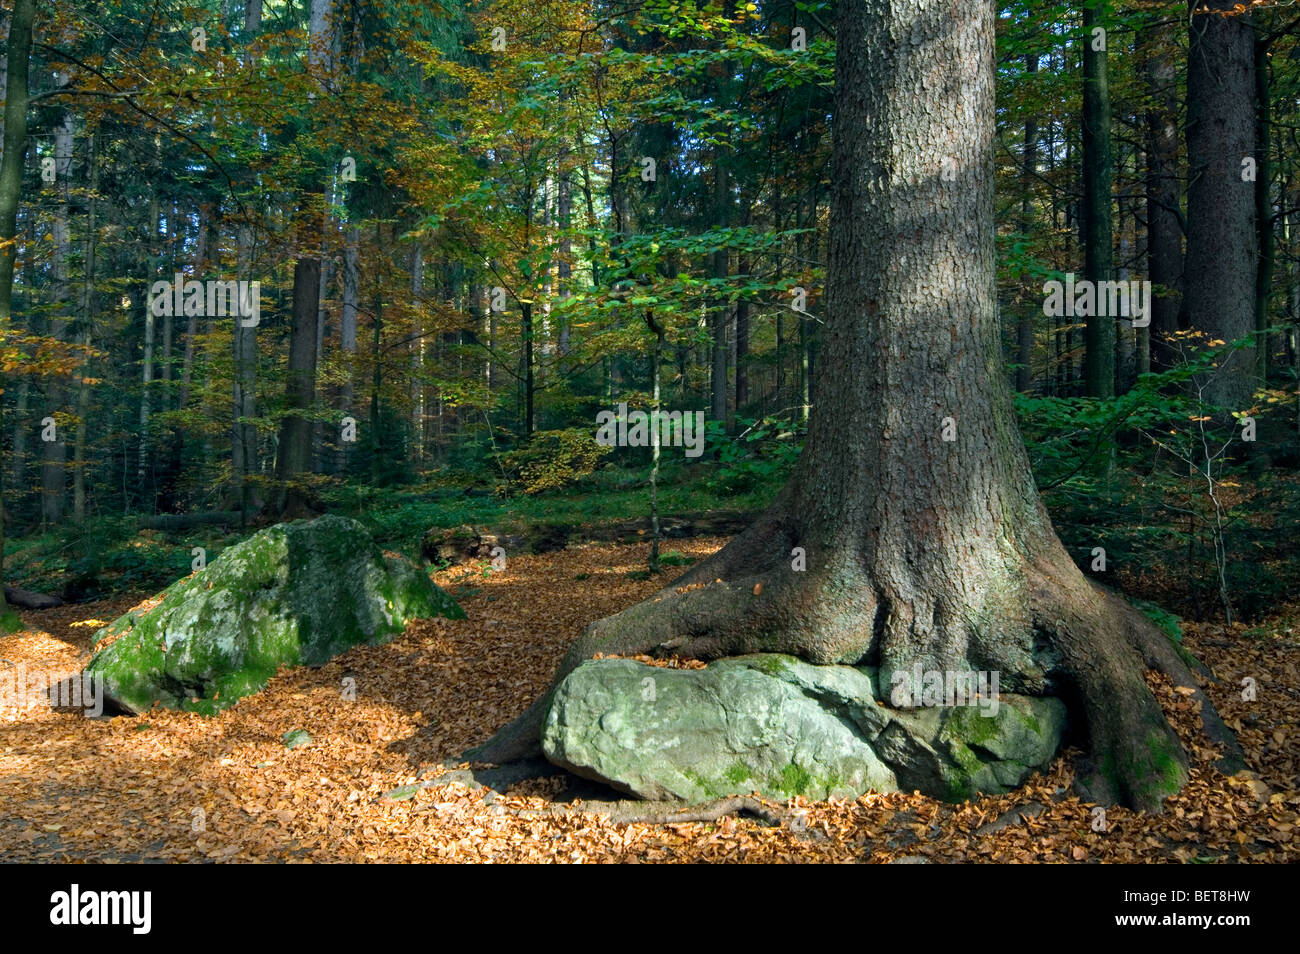 Hêtre (Fagus sylvatica) dans la forêt d'automne qui poussent sur la roche, forêt de Bavière, Allemagne Banque D'Images